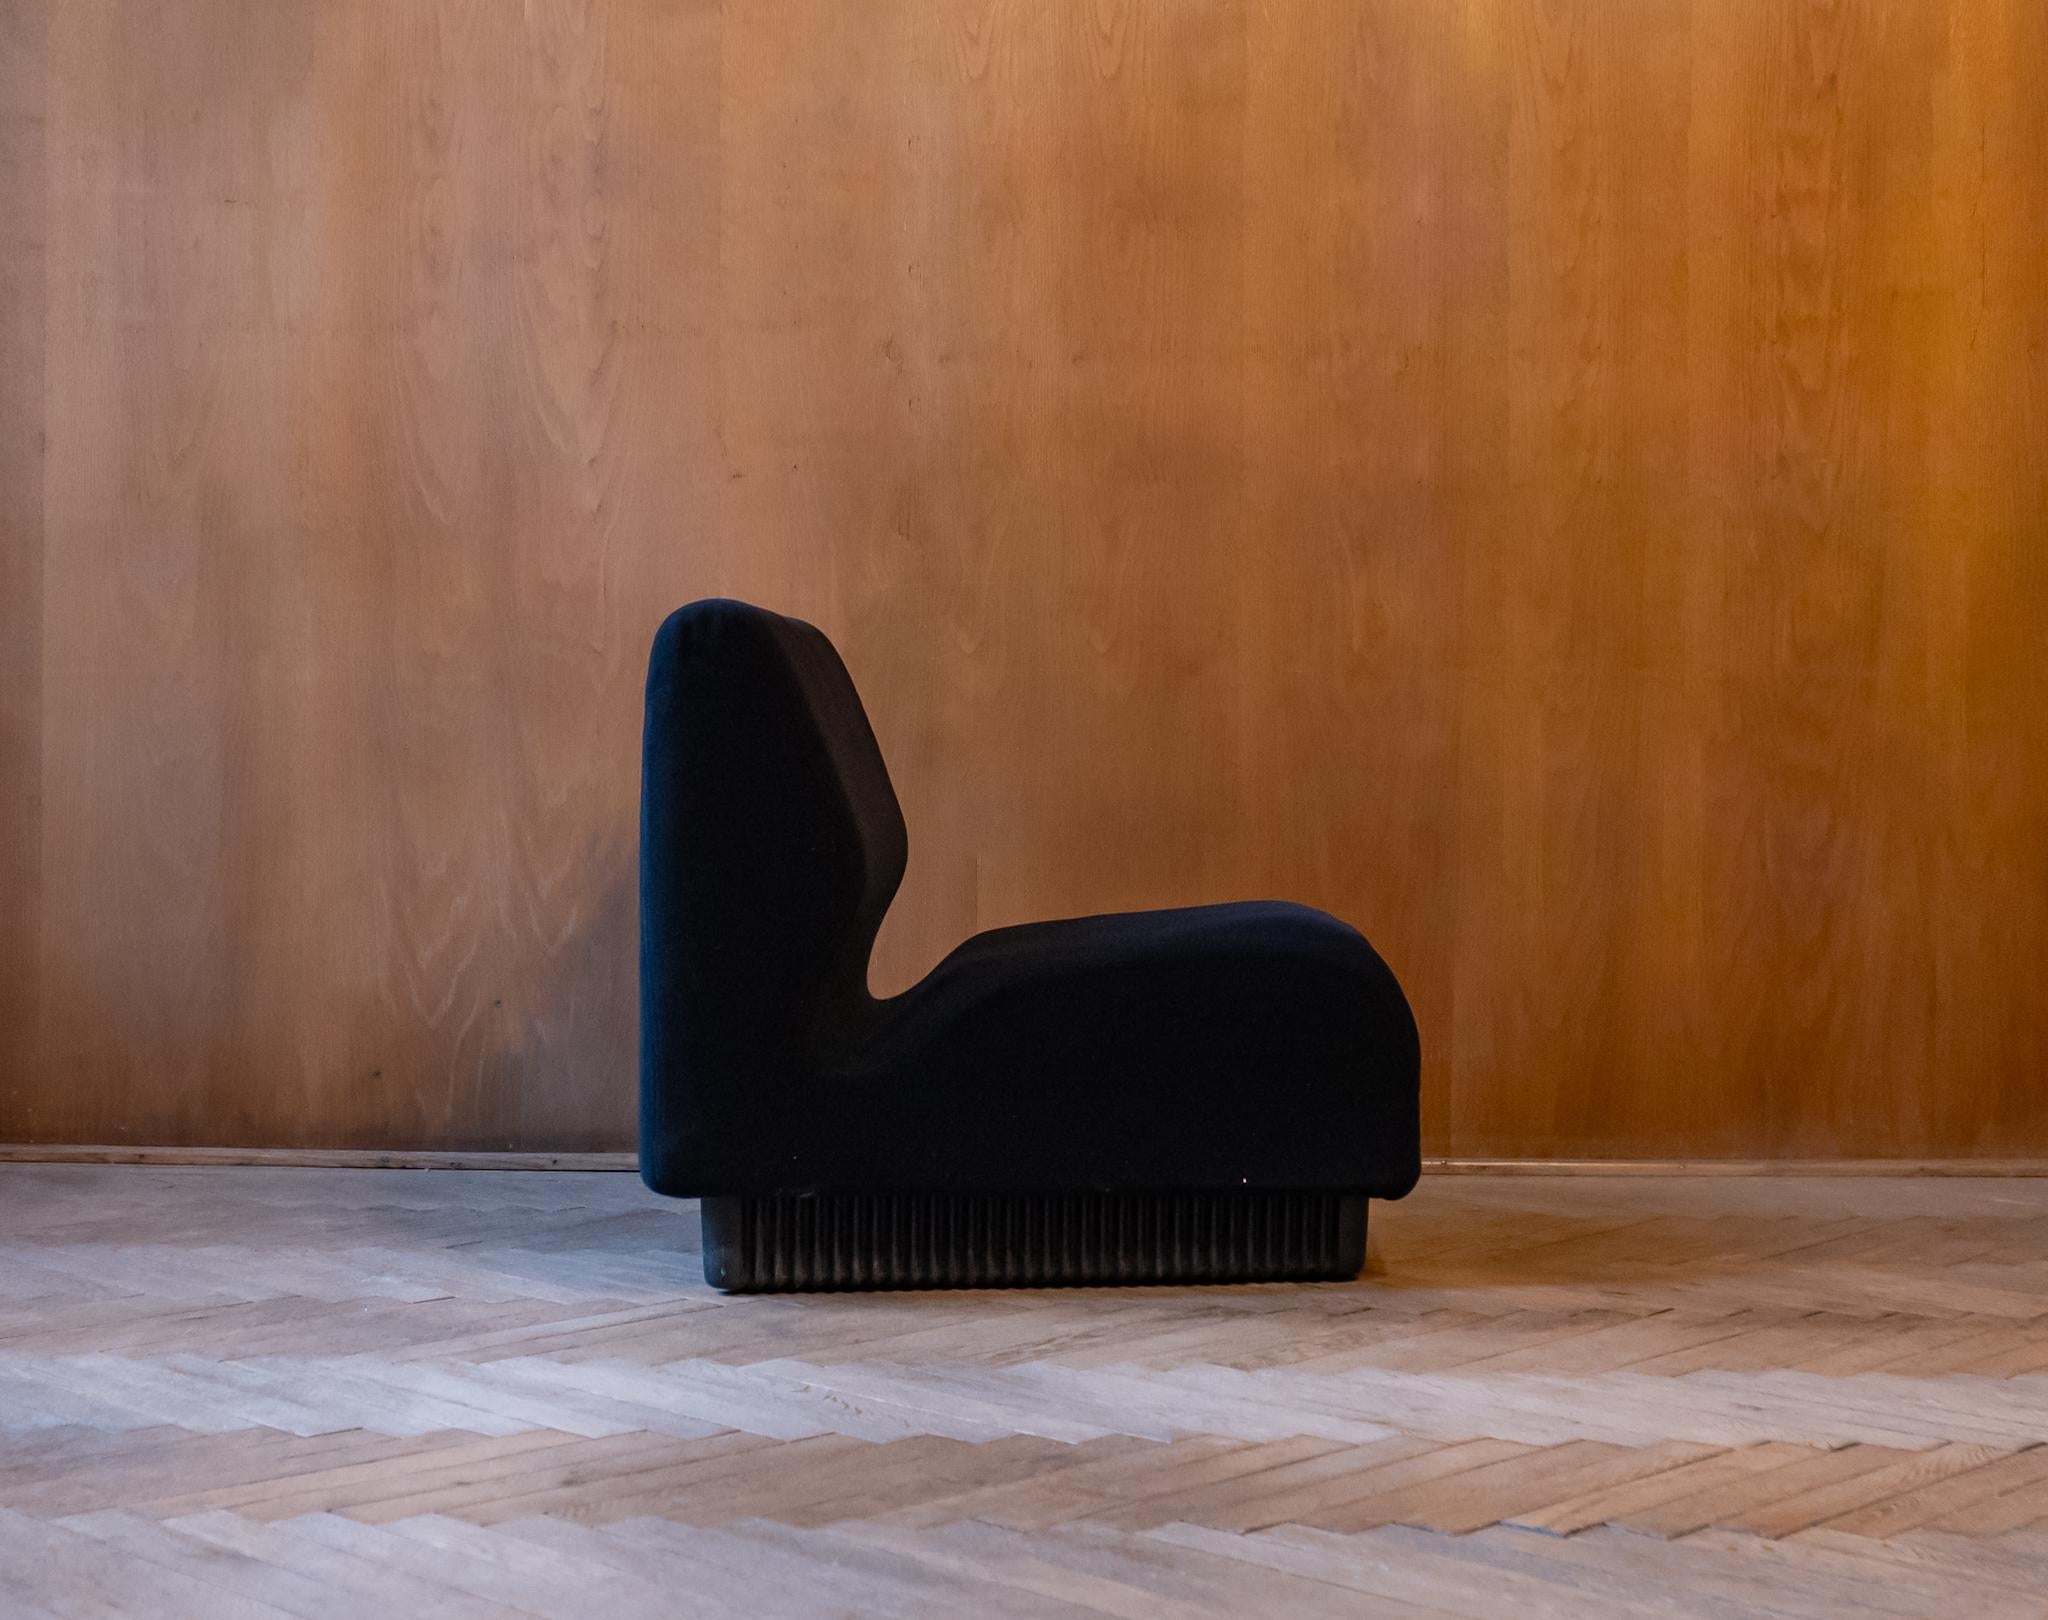 Modulares Sofa aus der Jahrhundertmitte von Don Chadwick von Herman Miller, USA 1970er Jahre.

Berühmtes modulares Sofa, entworfen von Don Chadwick im Jahr 1974  und von Herman Miller hergestellt. Dieses Sofa besteht aus 3 Sitzen, von denen einer